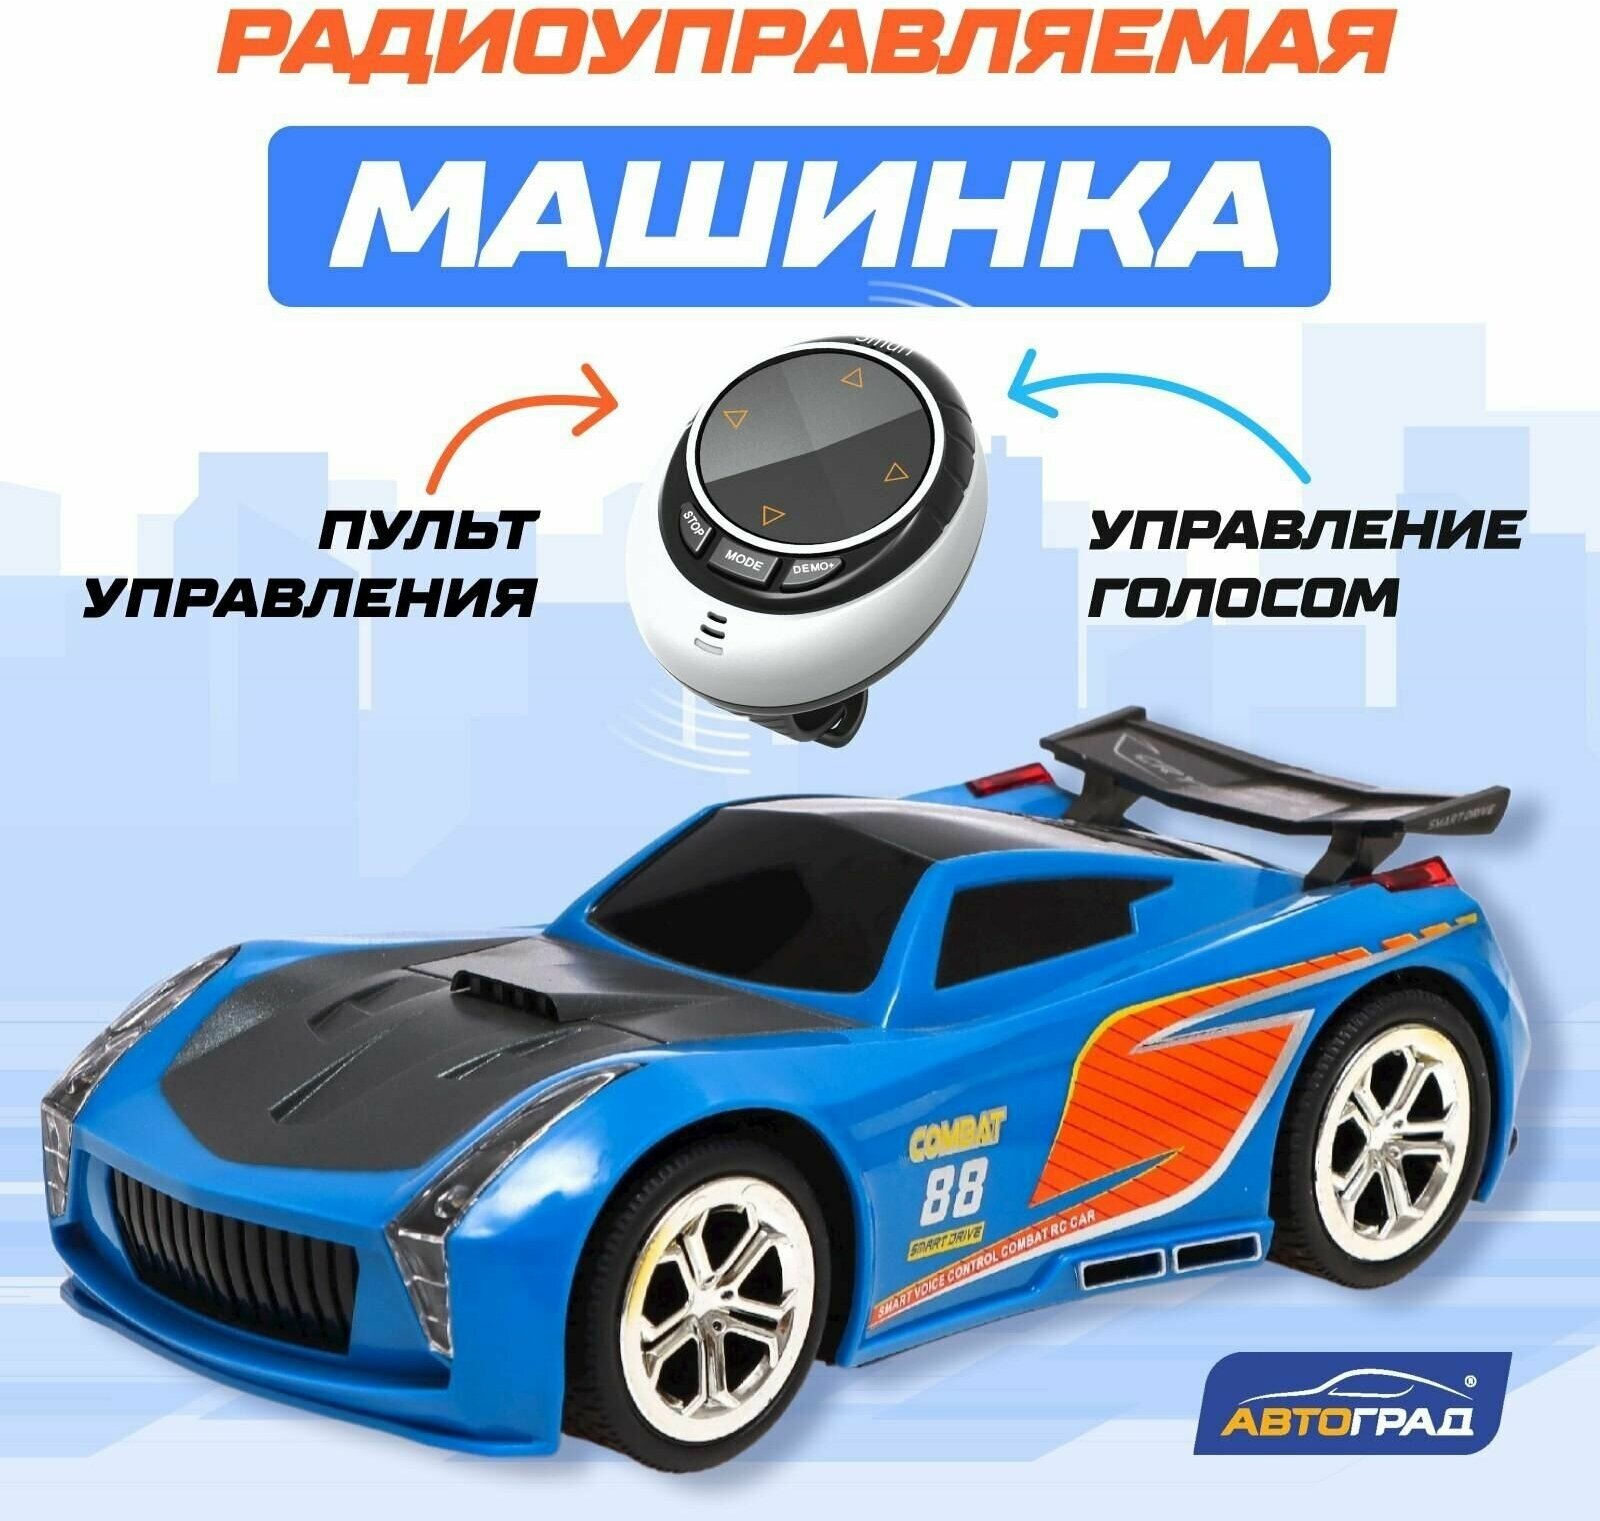 Машина игрушка радиоуправляемая VOICE, голосовое управление, русский язык, цвет синий